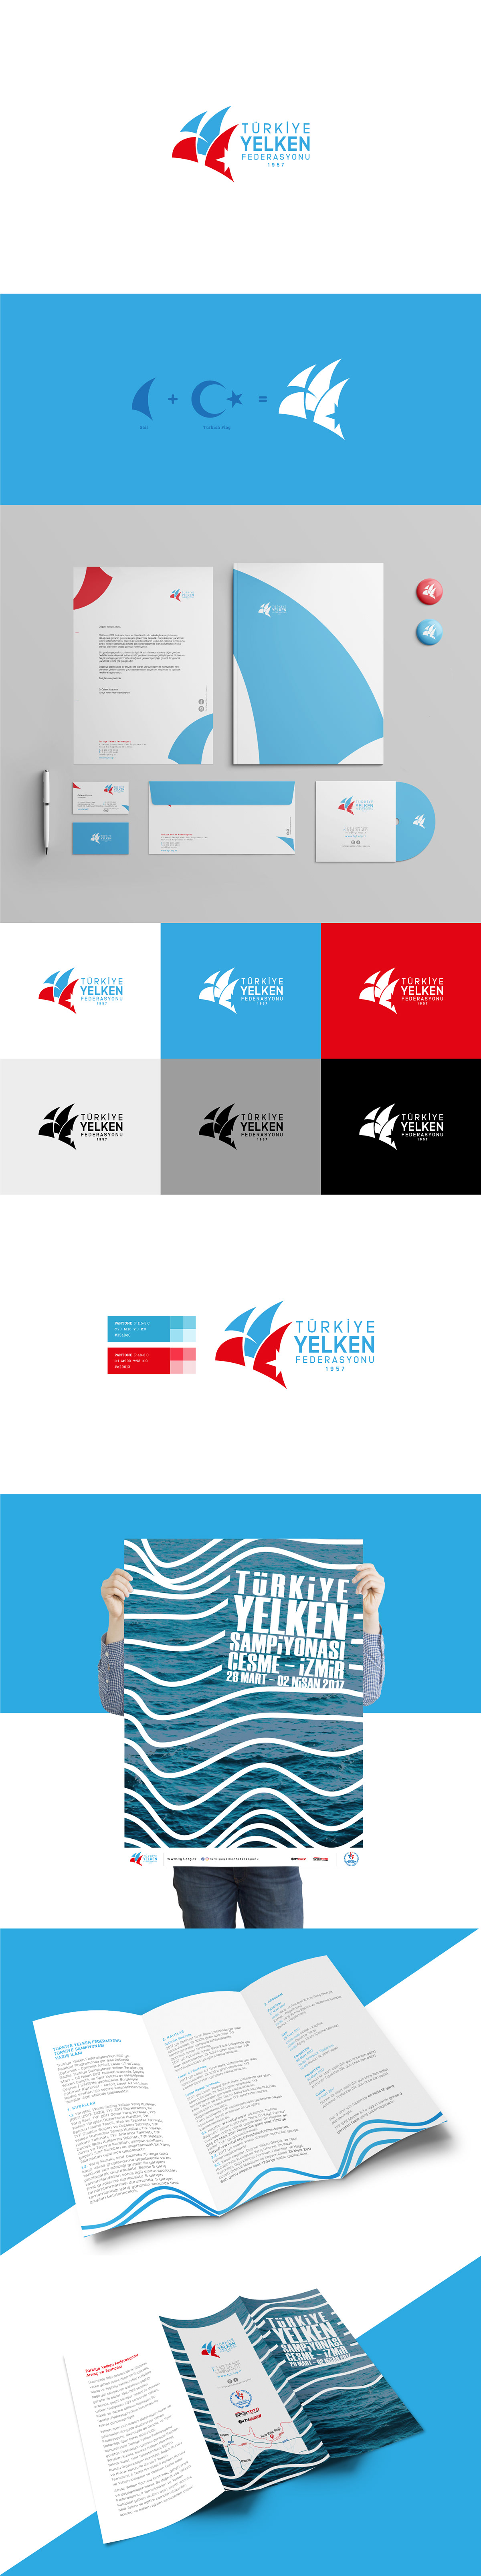 kurumsal kimlik Corporate Identity branding  logo tasarımı logo TYF Logo envelope business card Poster Design brochure design